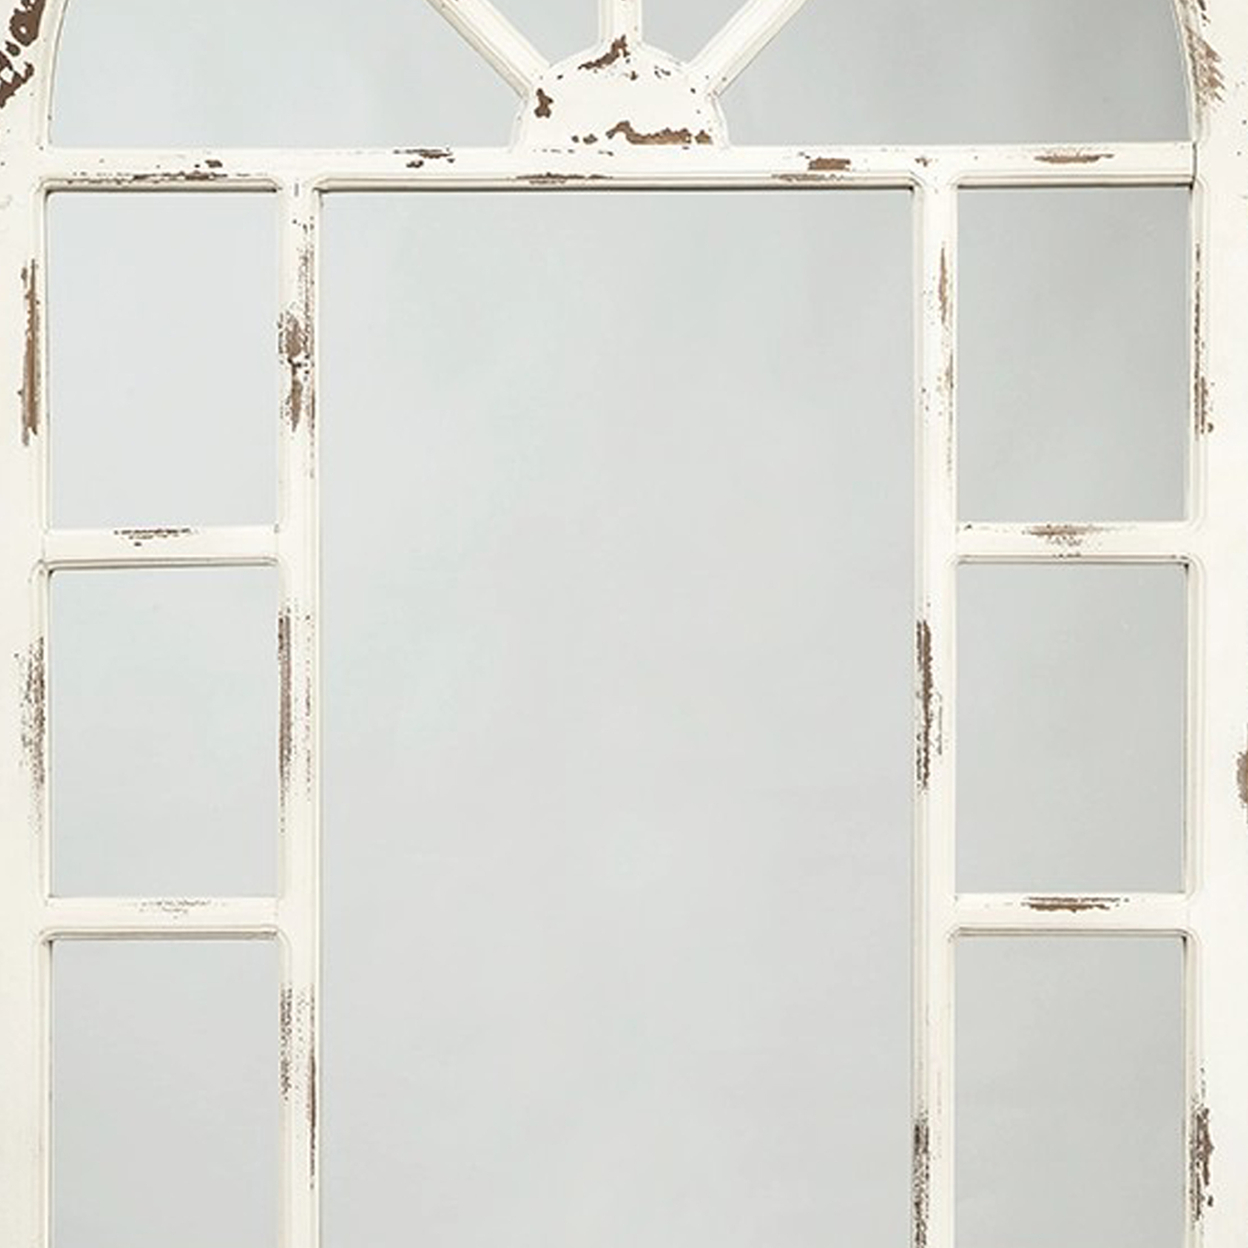 Wooden Window Pane Design Accent Mirror, Antique White- Saltoro Sherpi